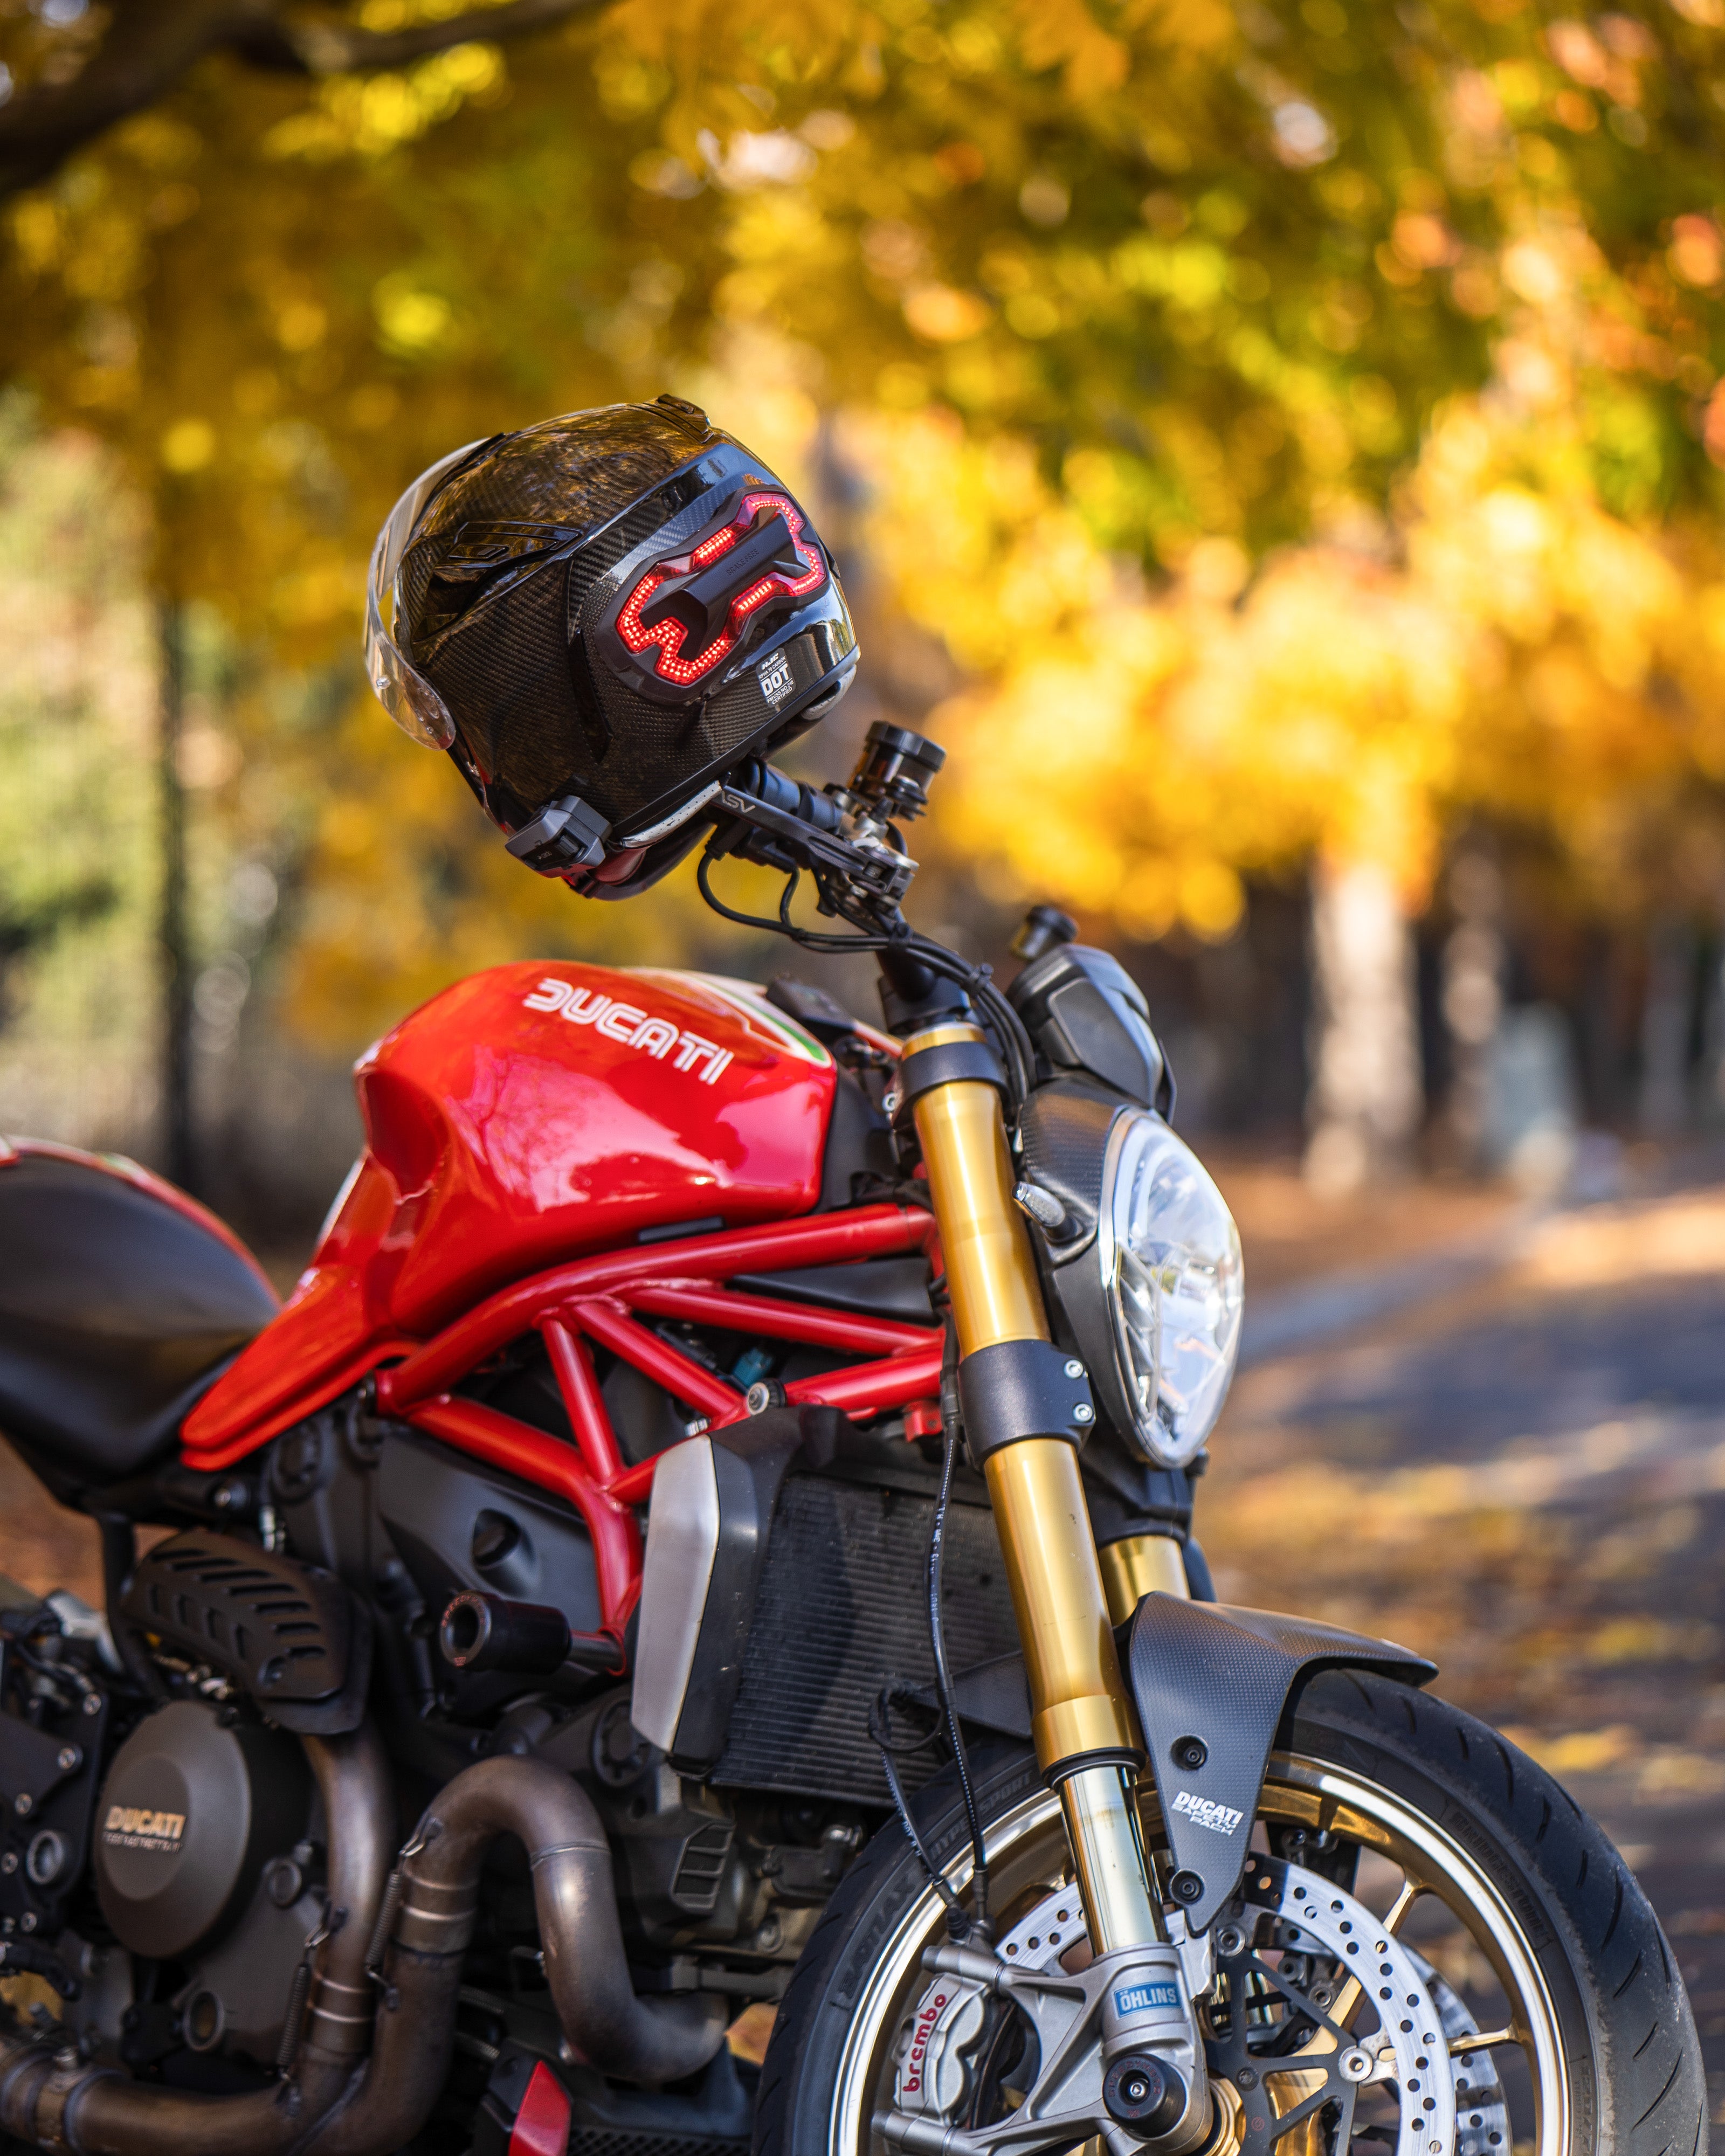 Brake Free with Ducati